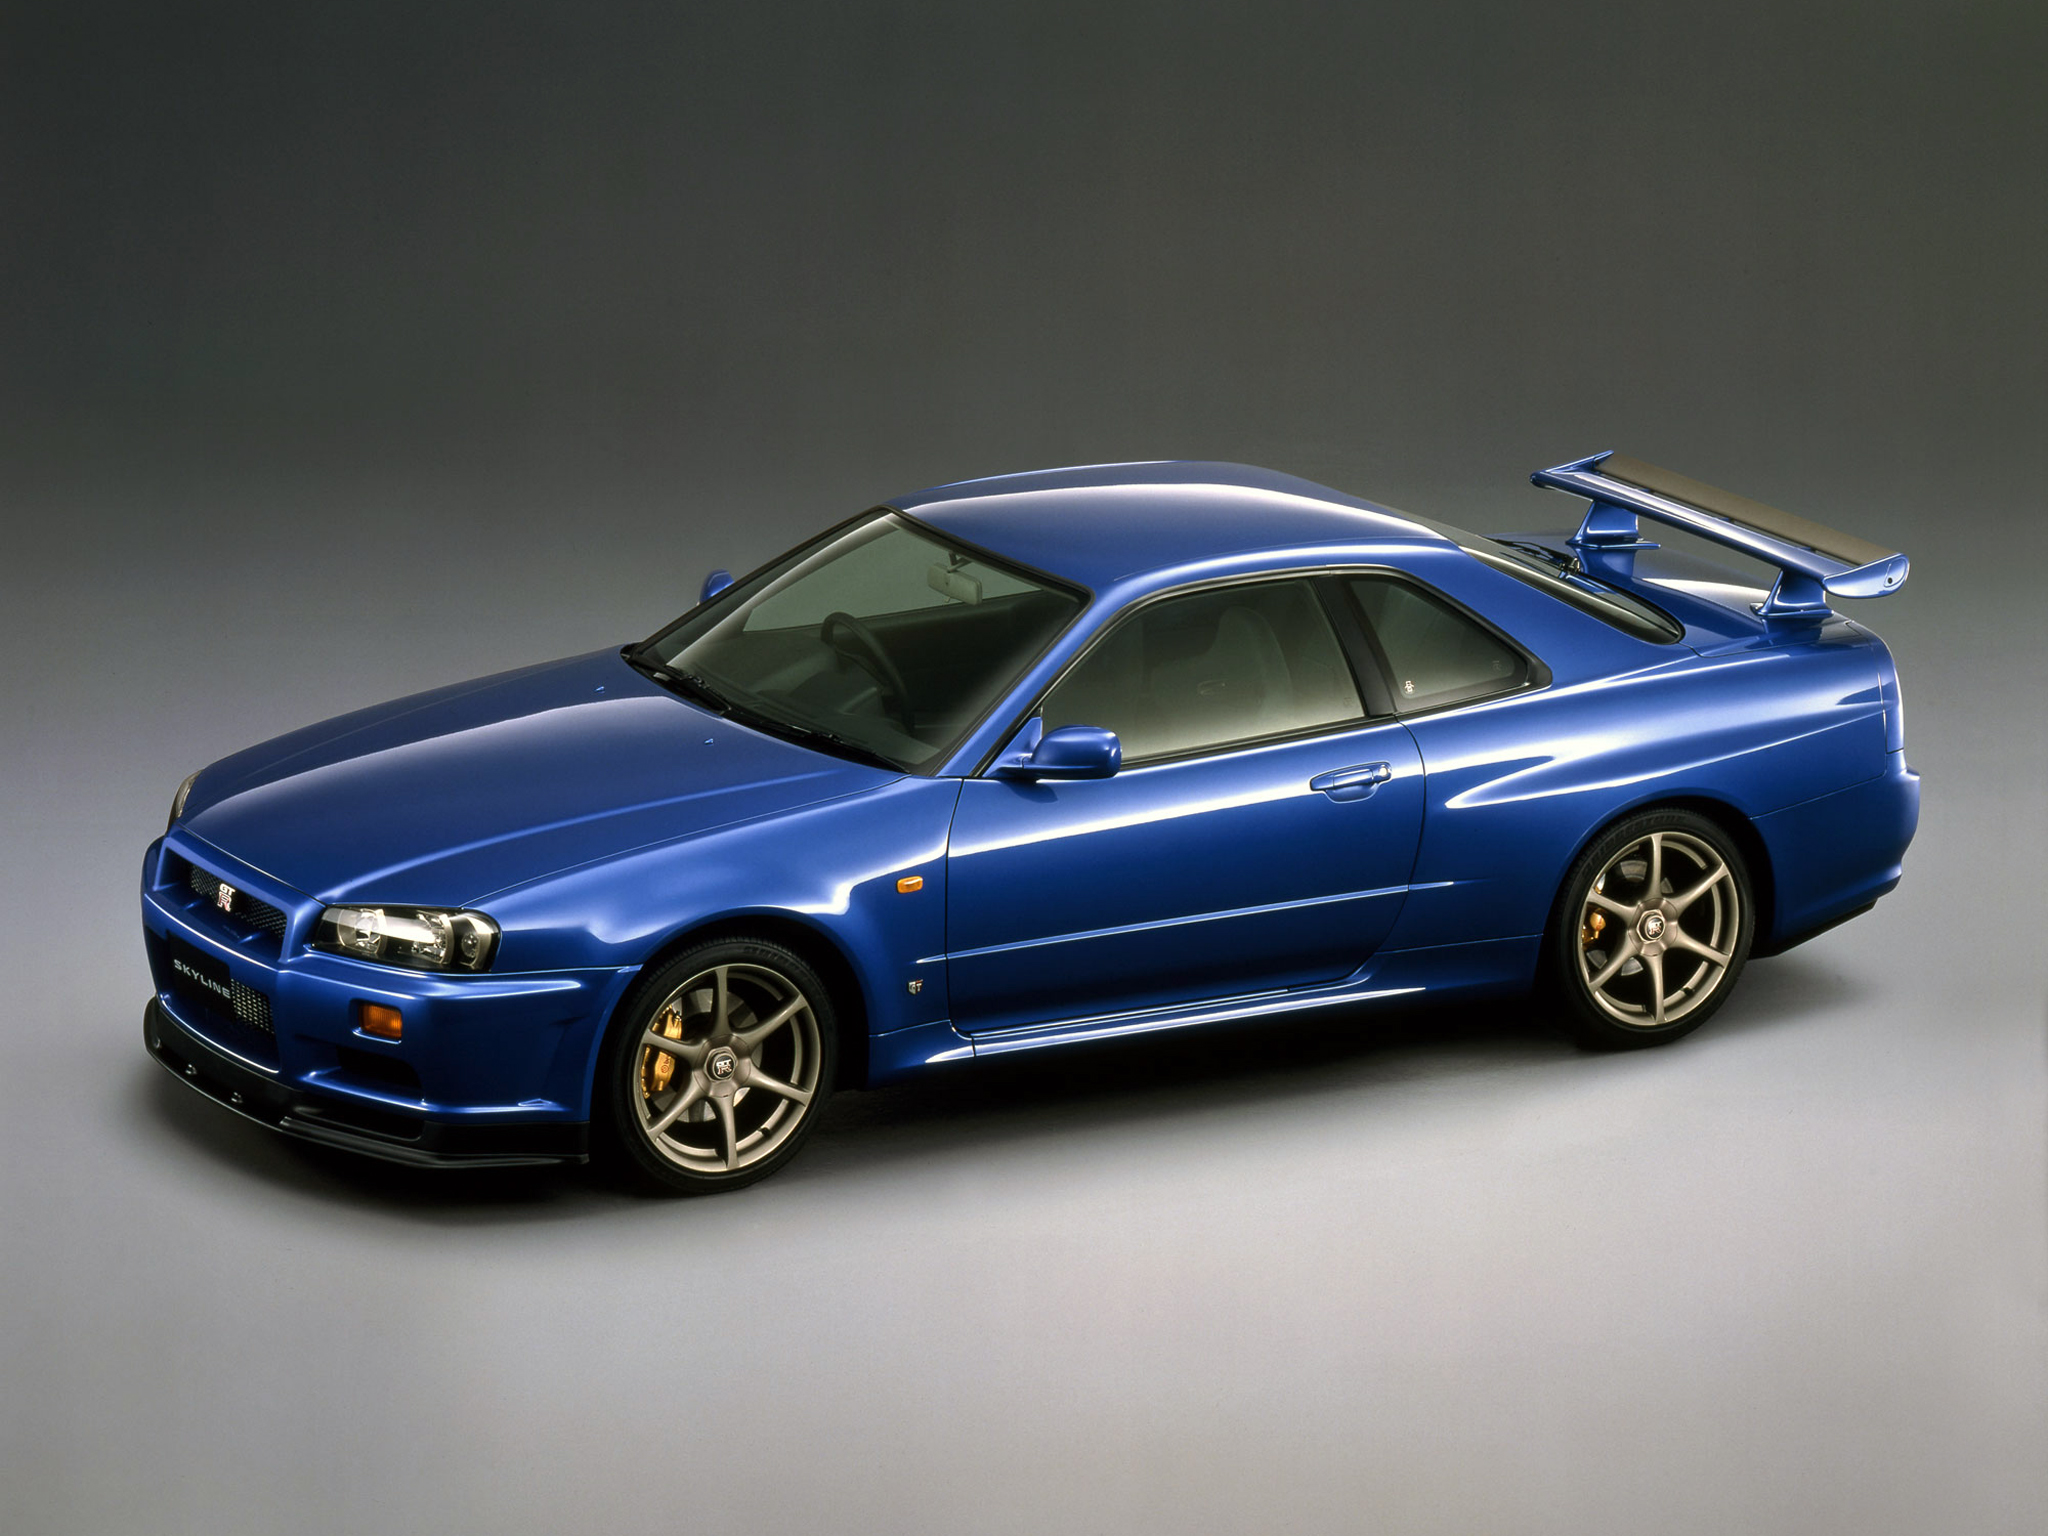 Ewolucja Godzilli: jak od początku zmieniał się Nissan Skyline GT-R